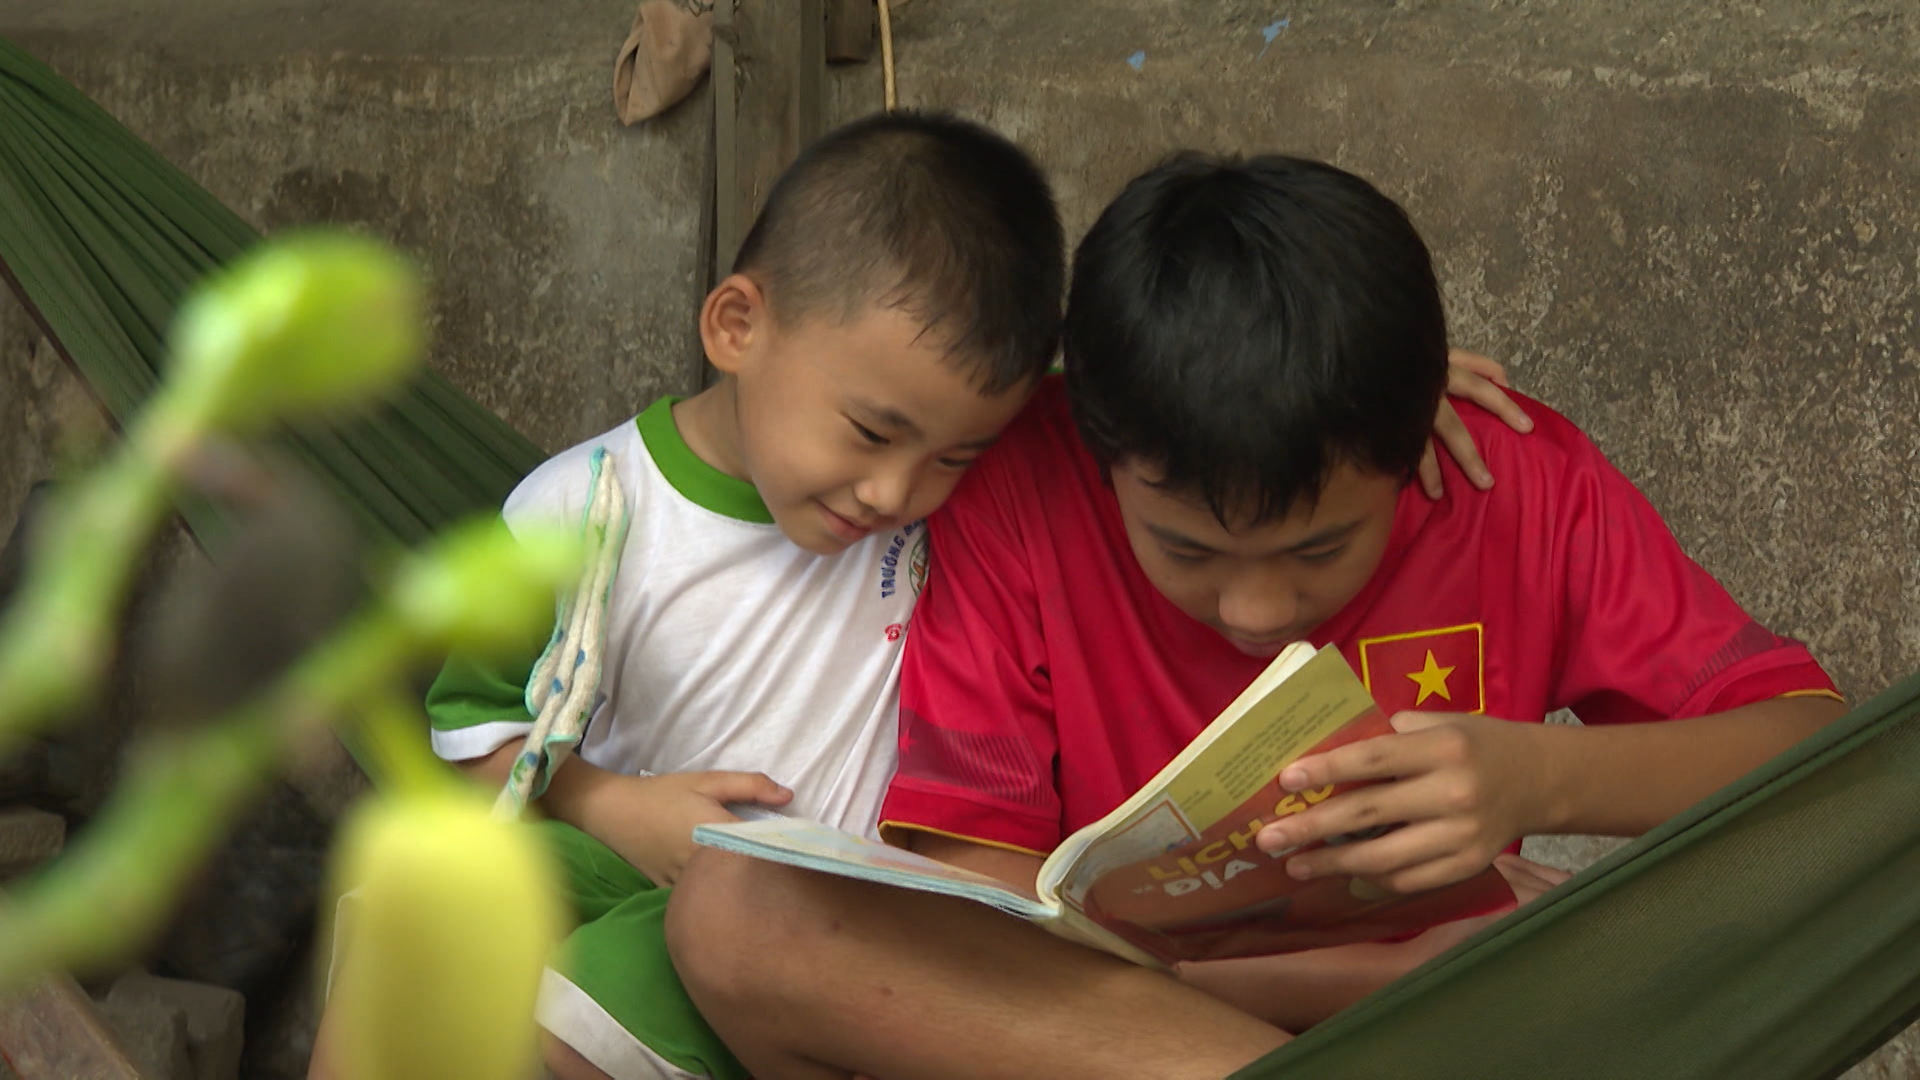 Xót xa hoàn cảnh gia đình tại Tiền Giang, U60 vẫn lam lũ làm phụ hồ nuôi cha mẹ và 2 em khuyết tật - ảnh 5